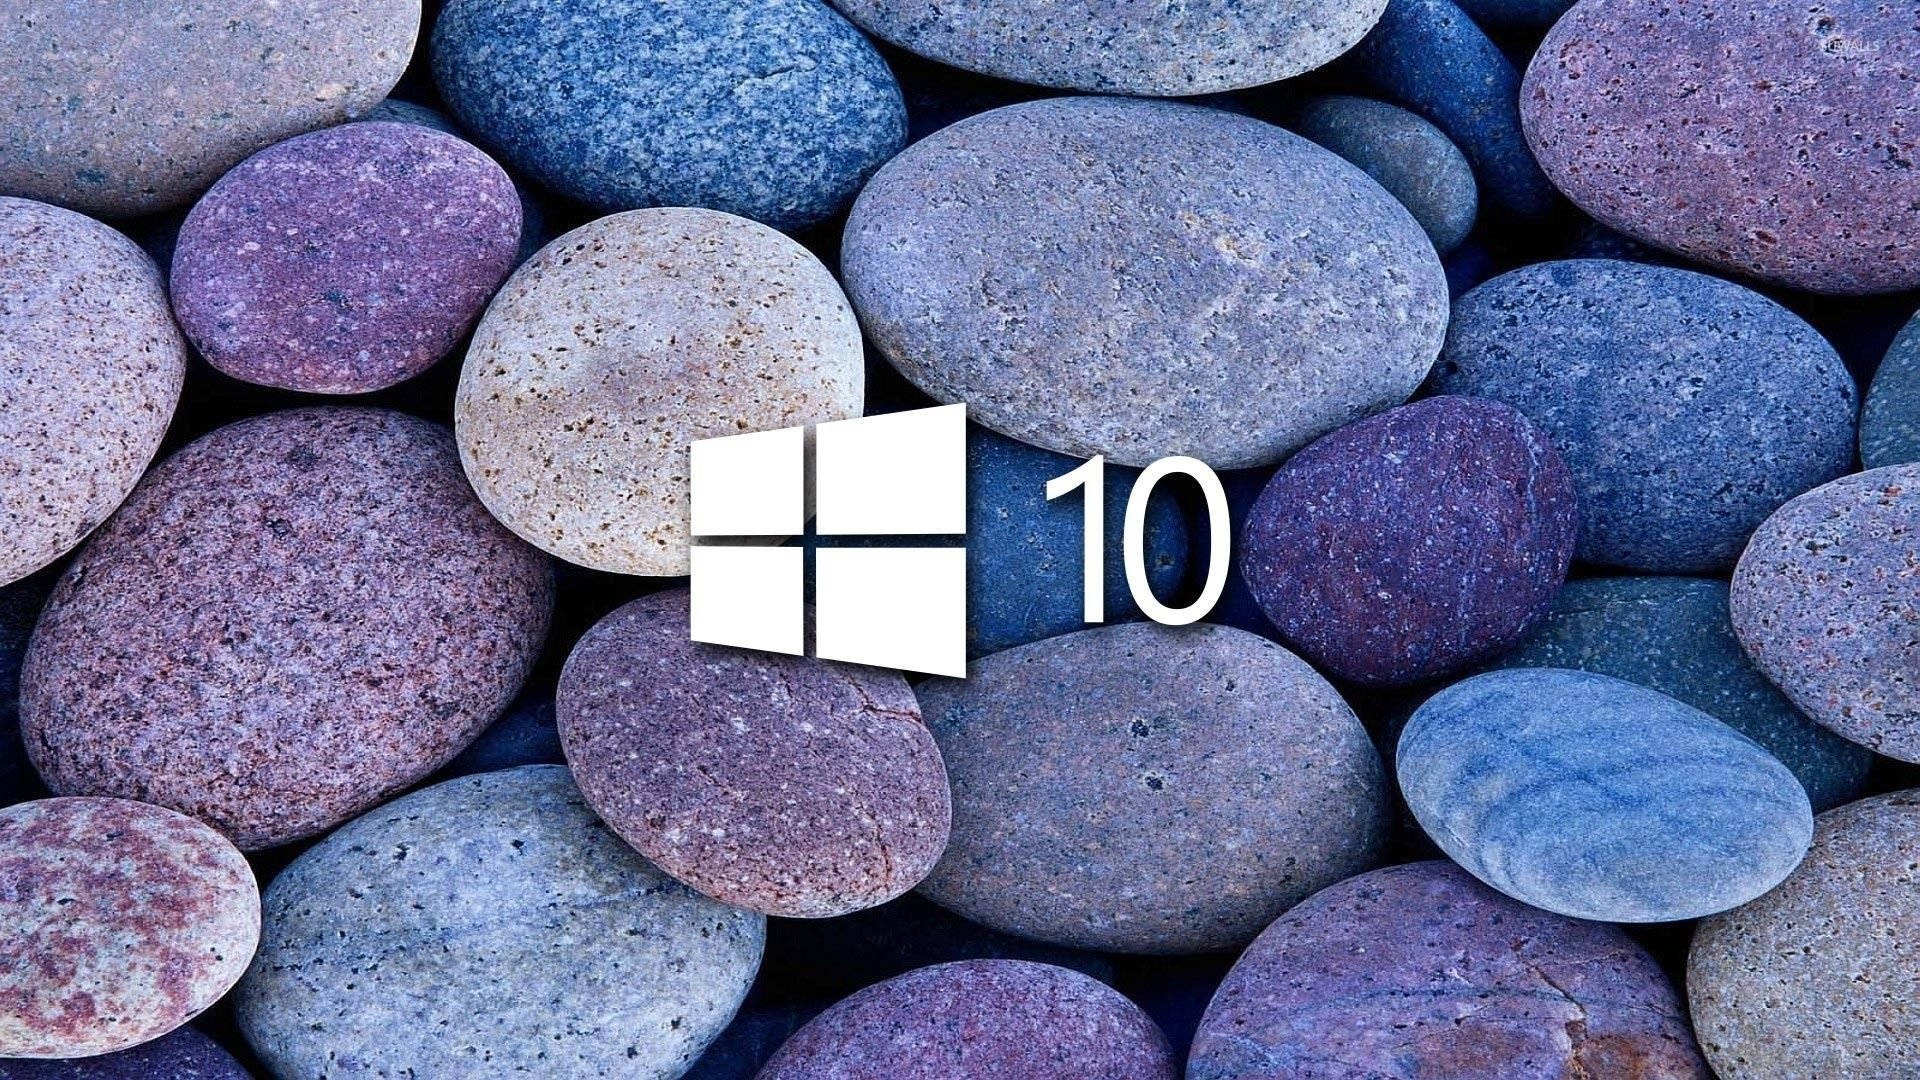  Windows 10 HD Hintergrundbild 1920x1080. Windows 10 HD Wallpaper